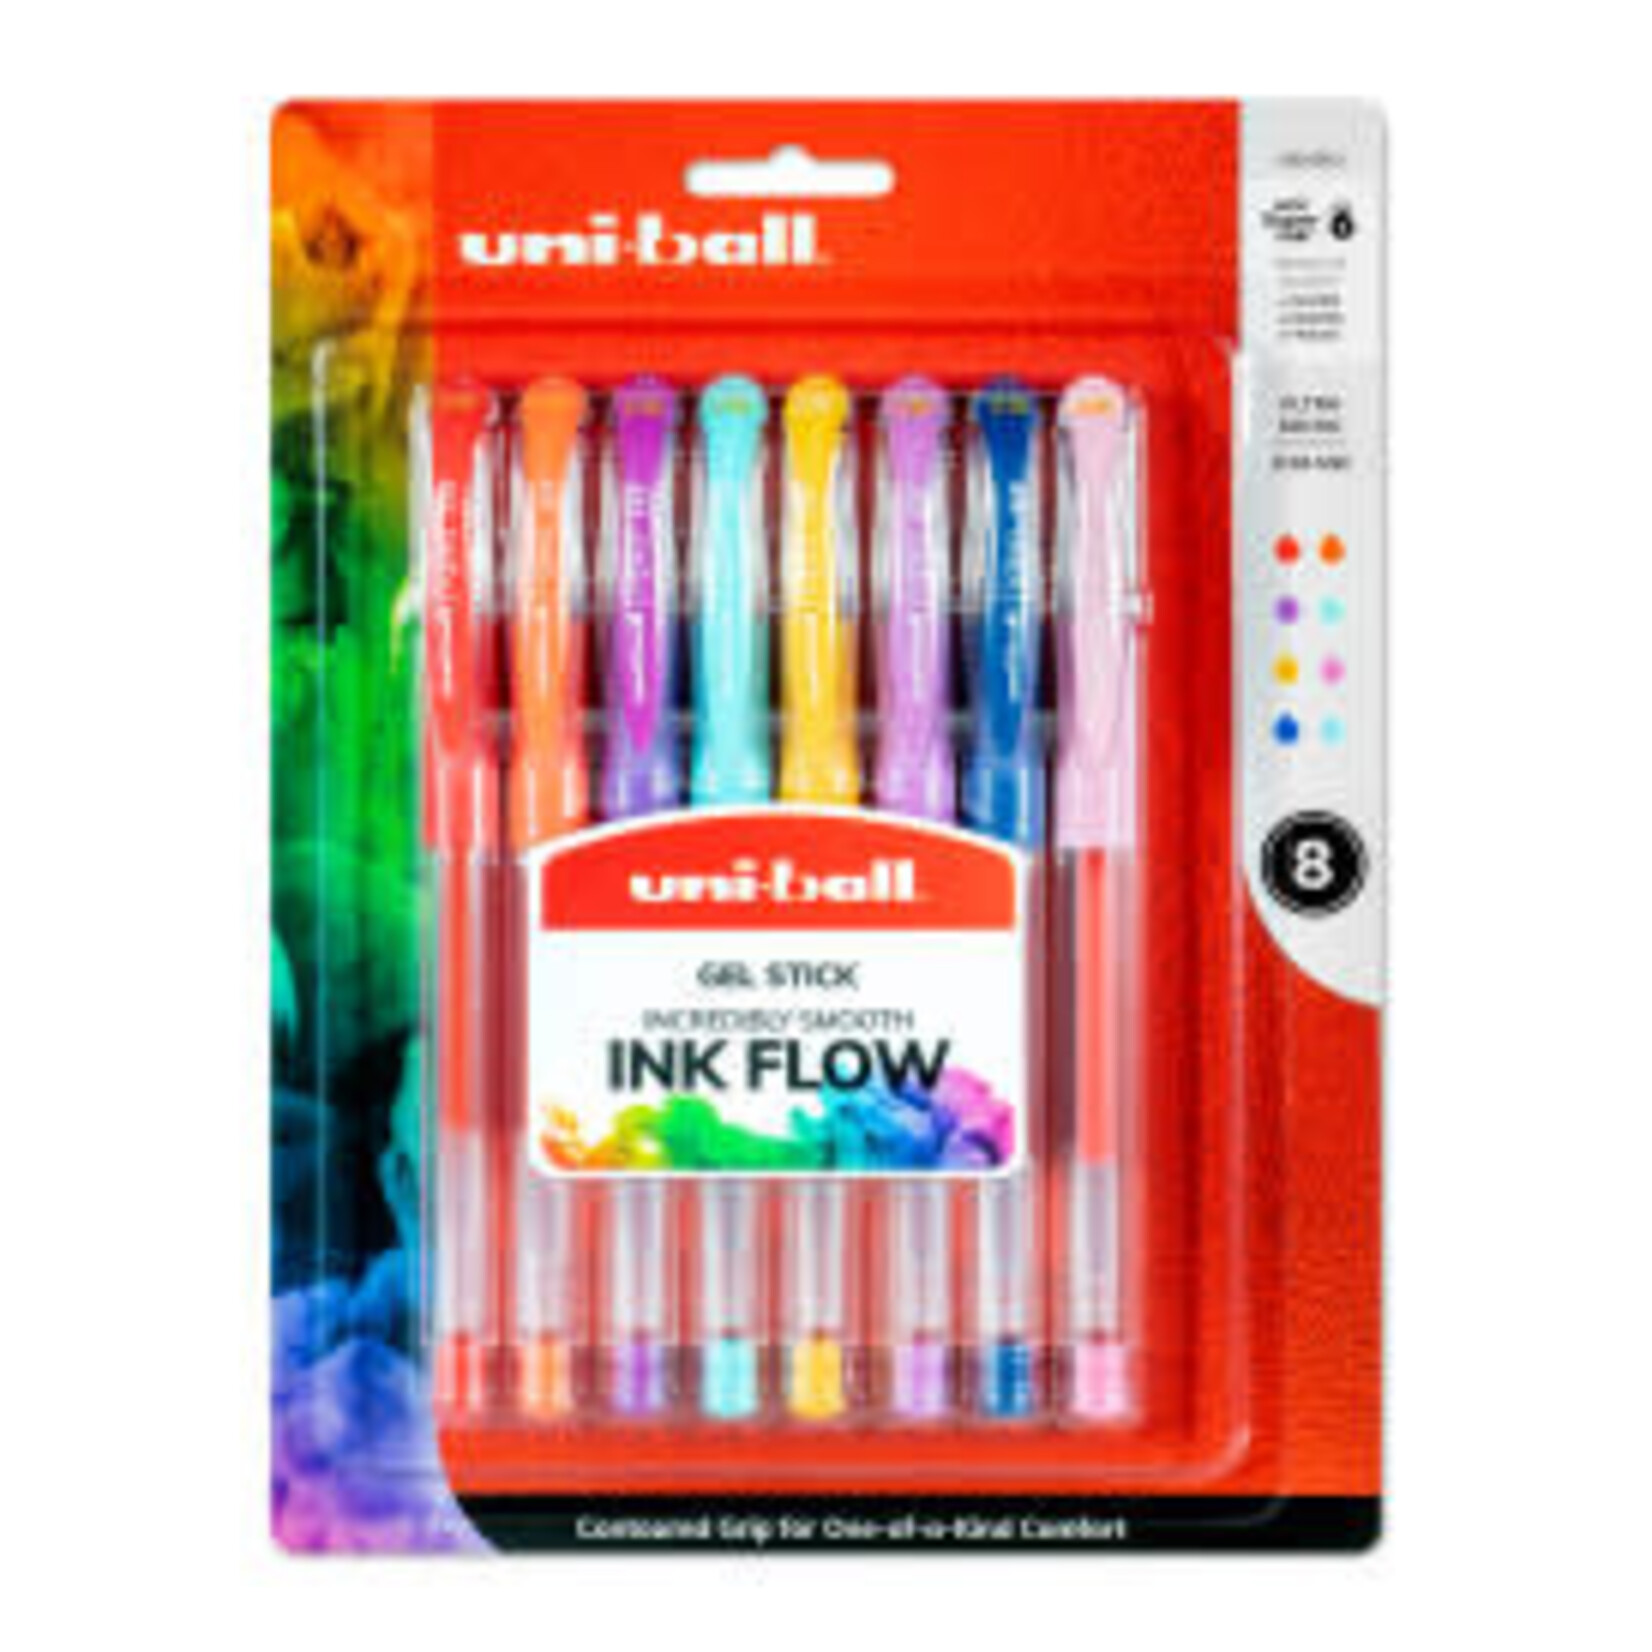 Uni-ball SIGNO Gelstick Pen Set, 8-Color Set